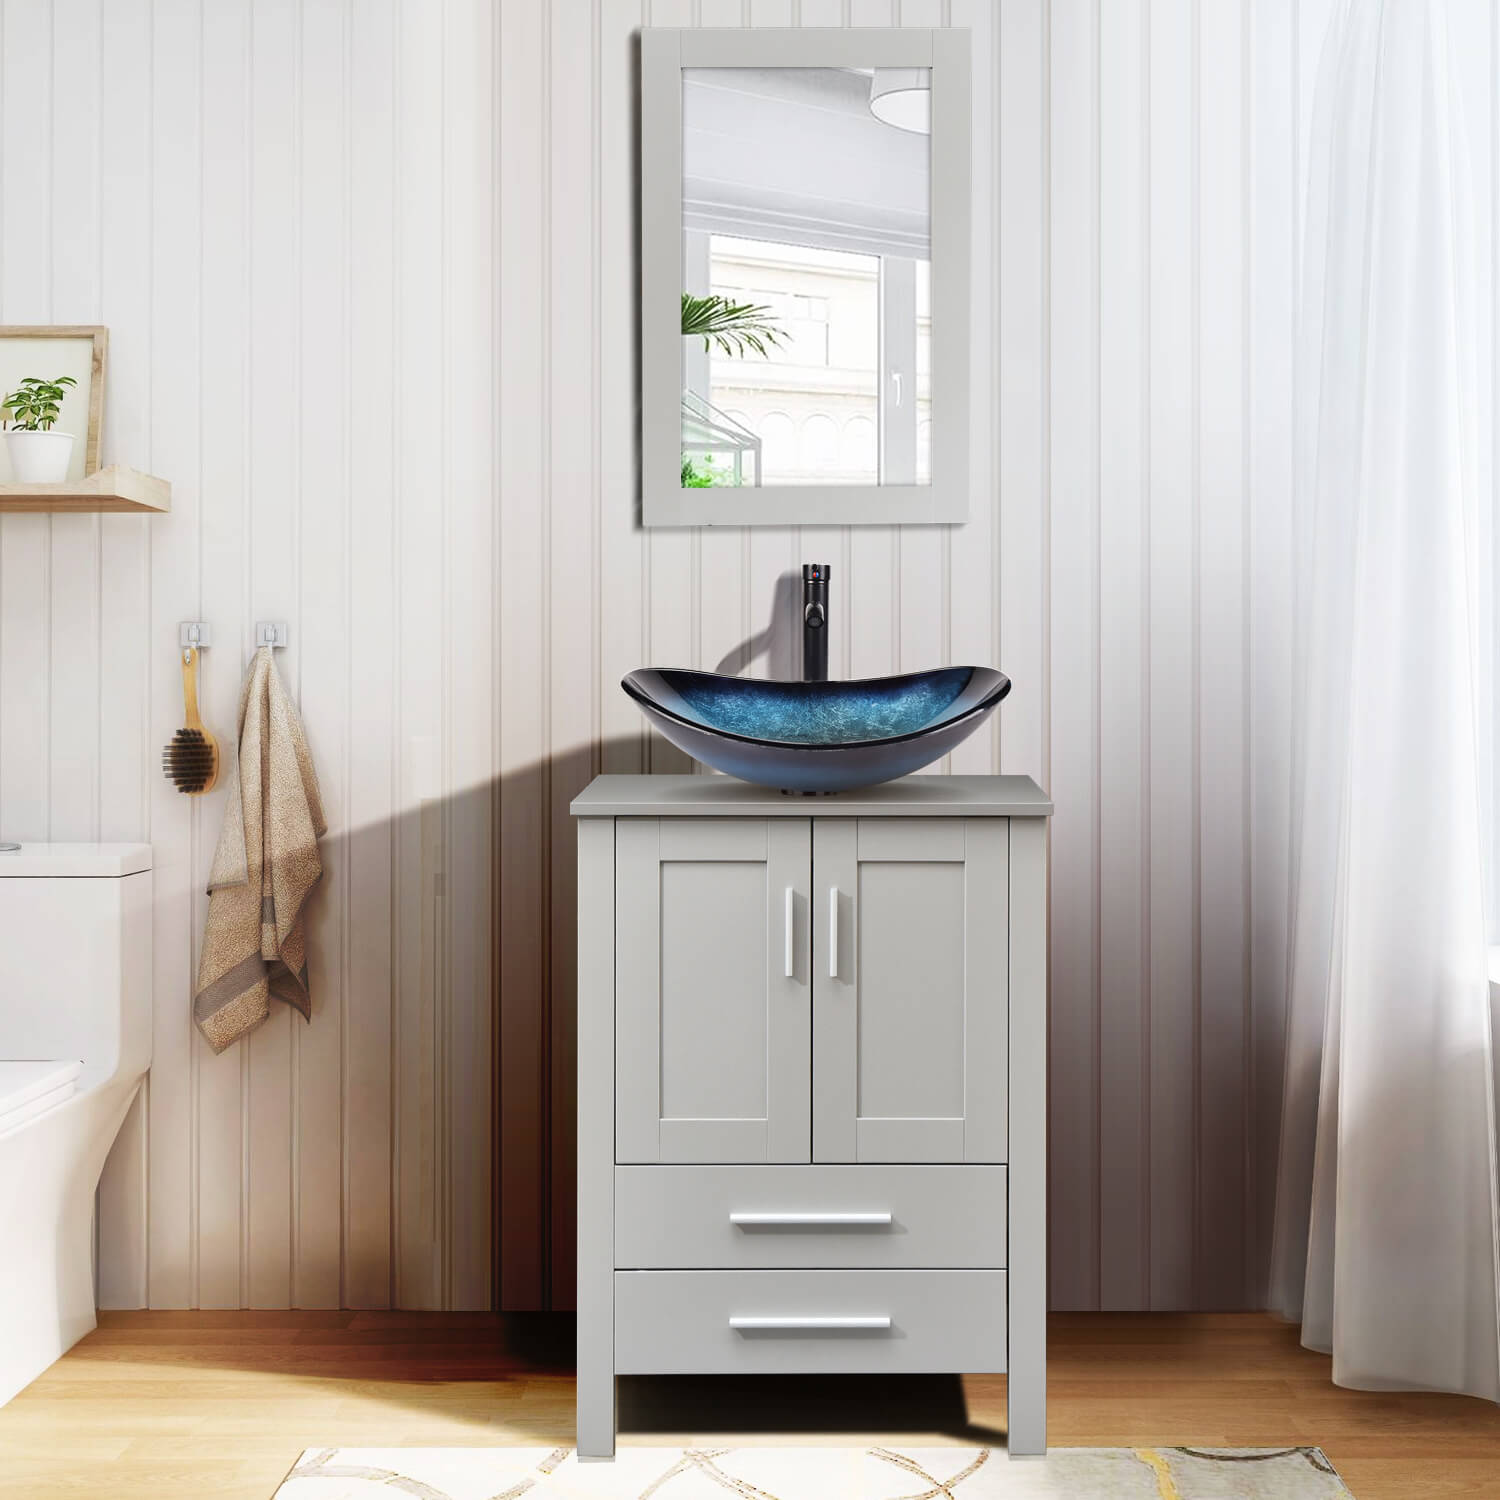 Elecwish gray wood bathroom vanity with blue boat glass sink BG005BL in bathroom